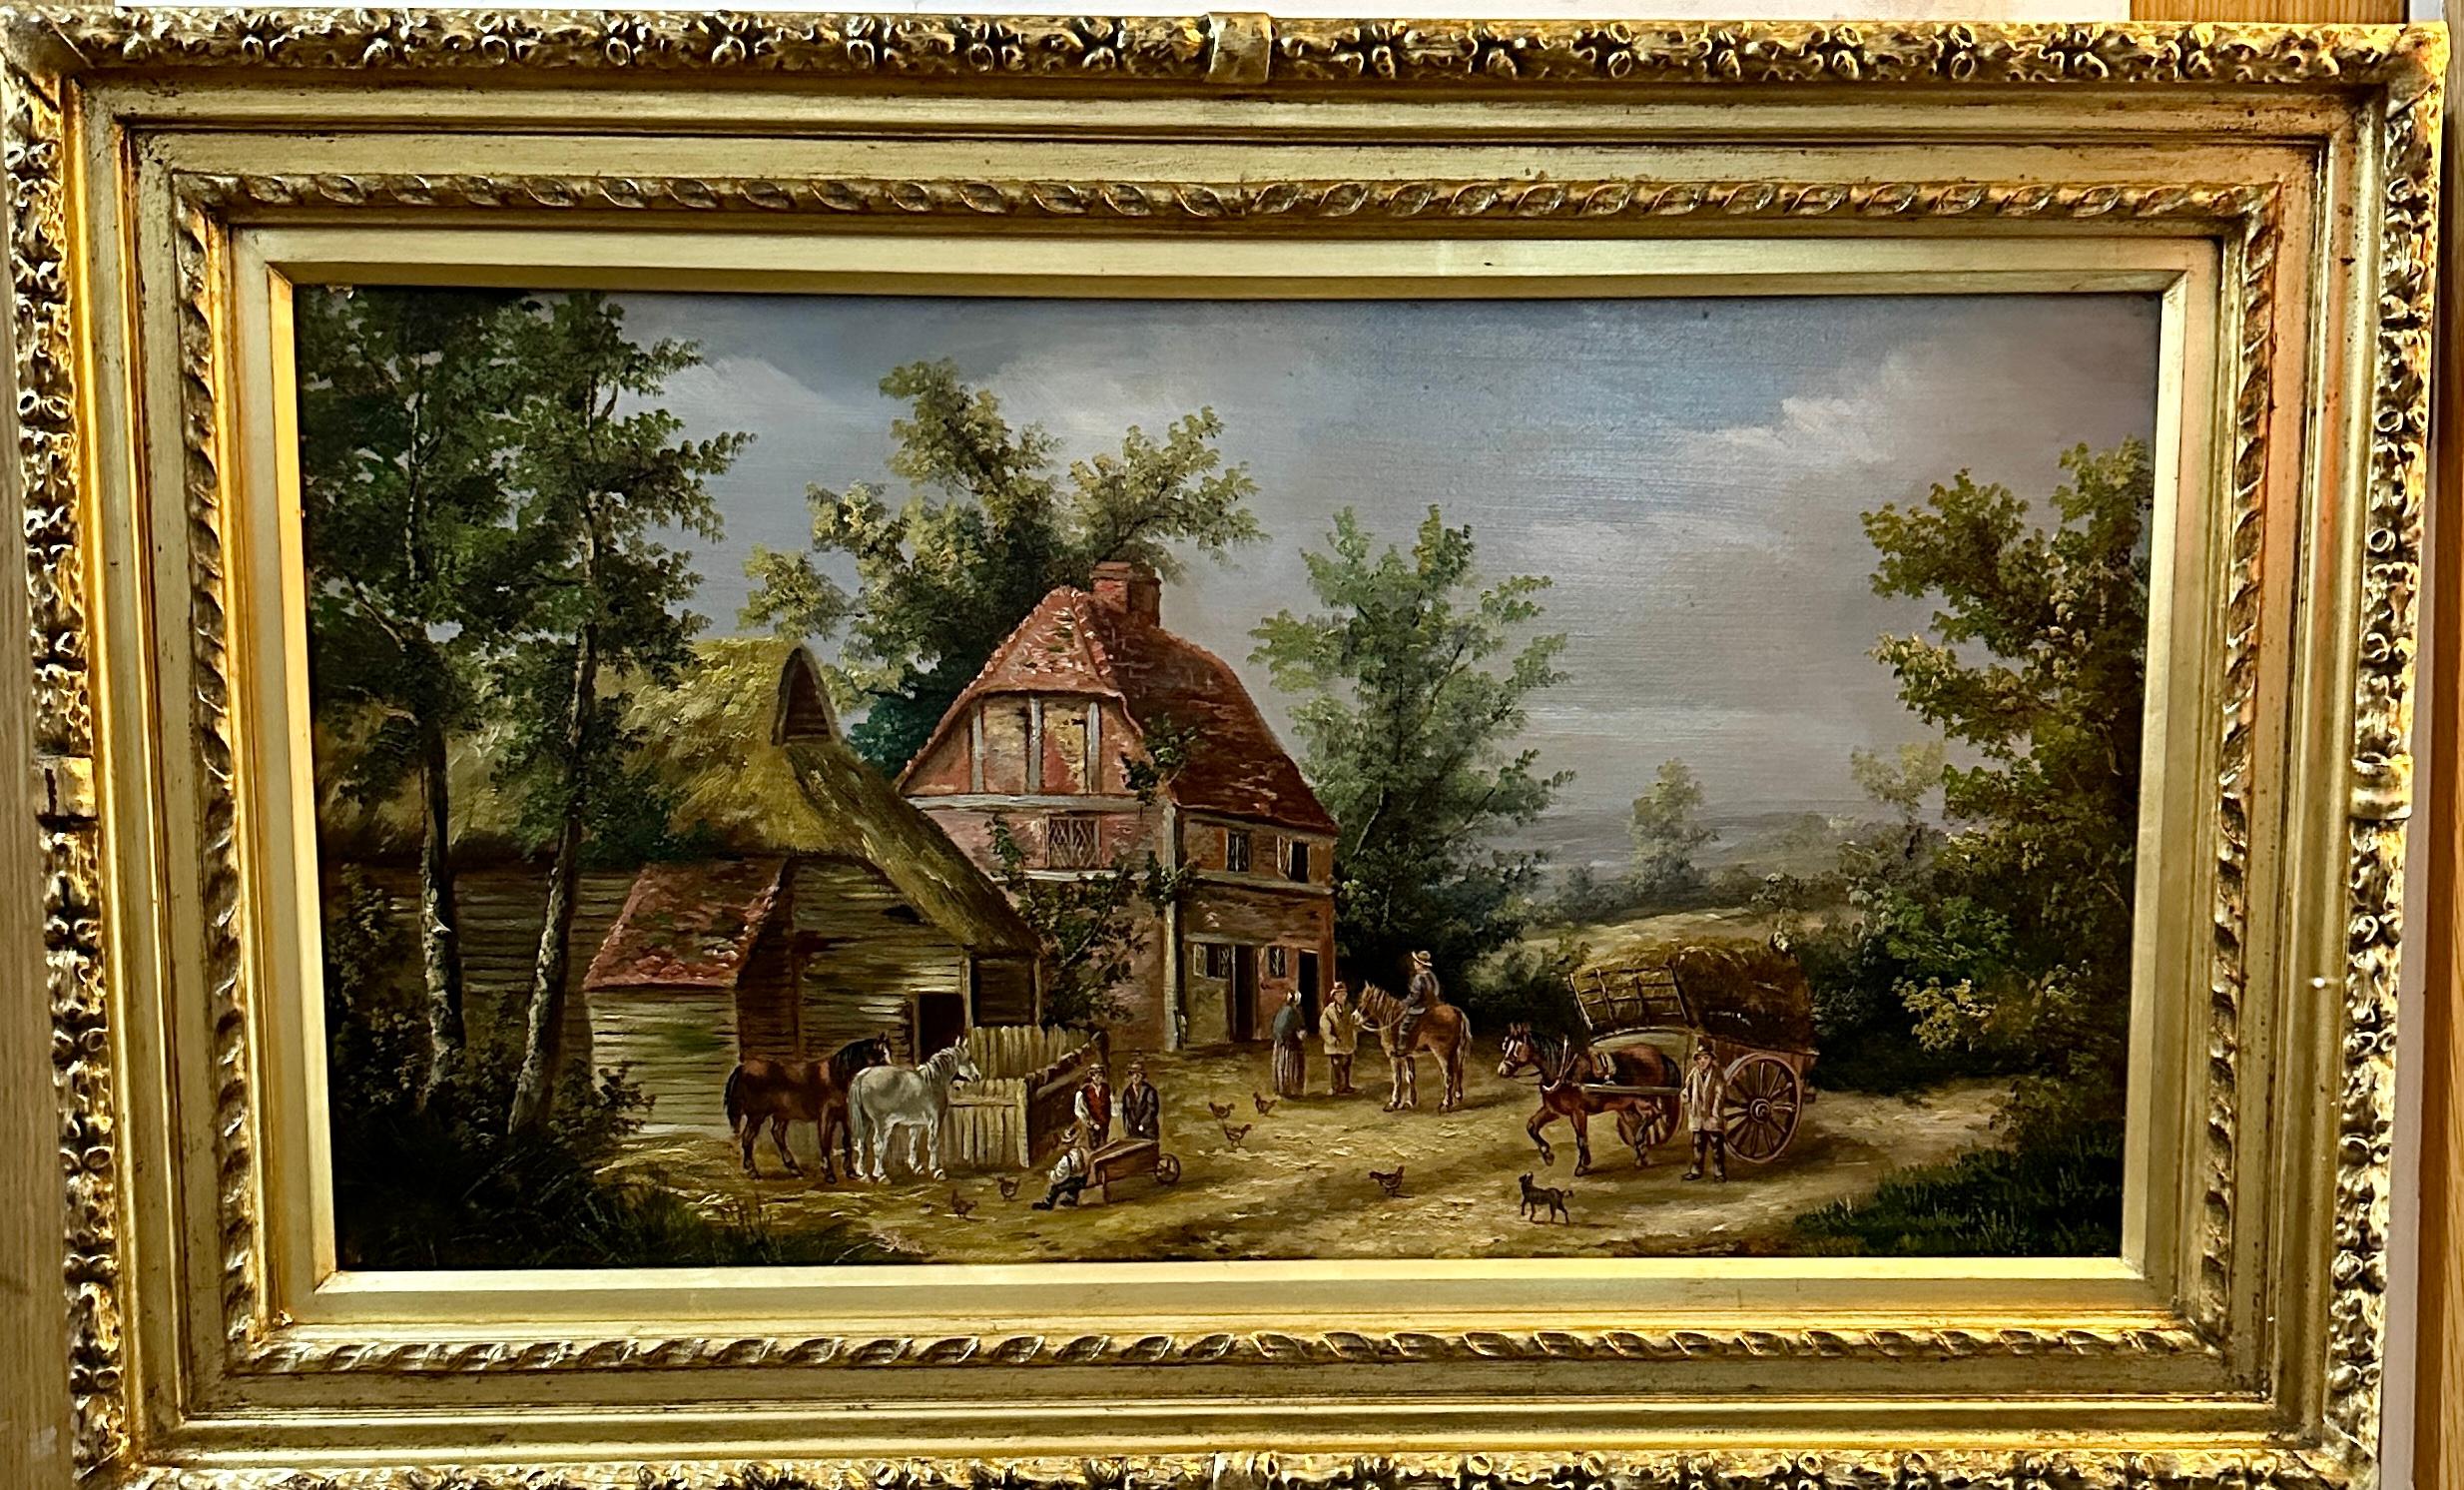 Englische Dorfszene aus dem 19. Jahrhundert mit Häusern, Pferdelandschaft und Menschen